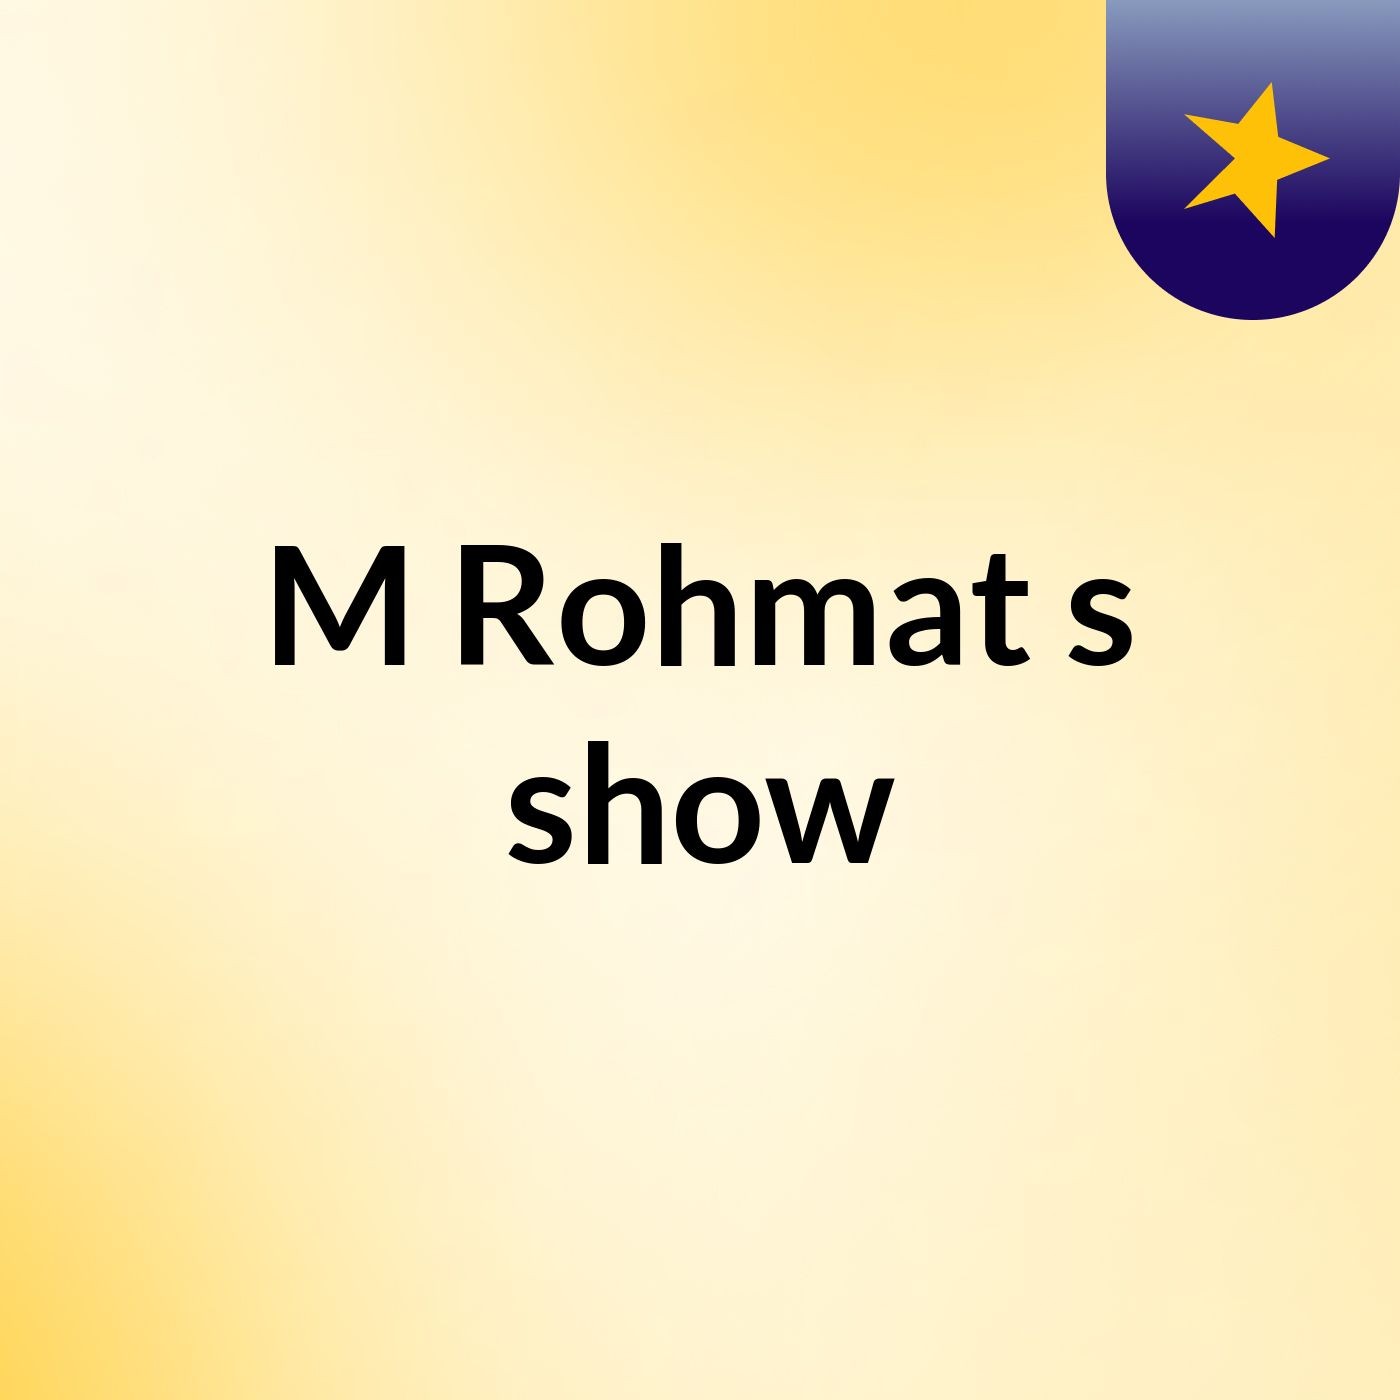 M Rohmat's show